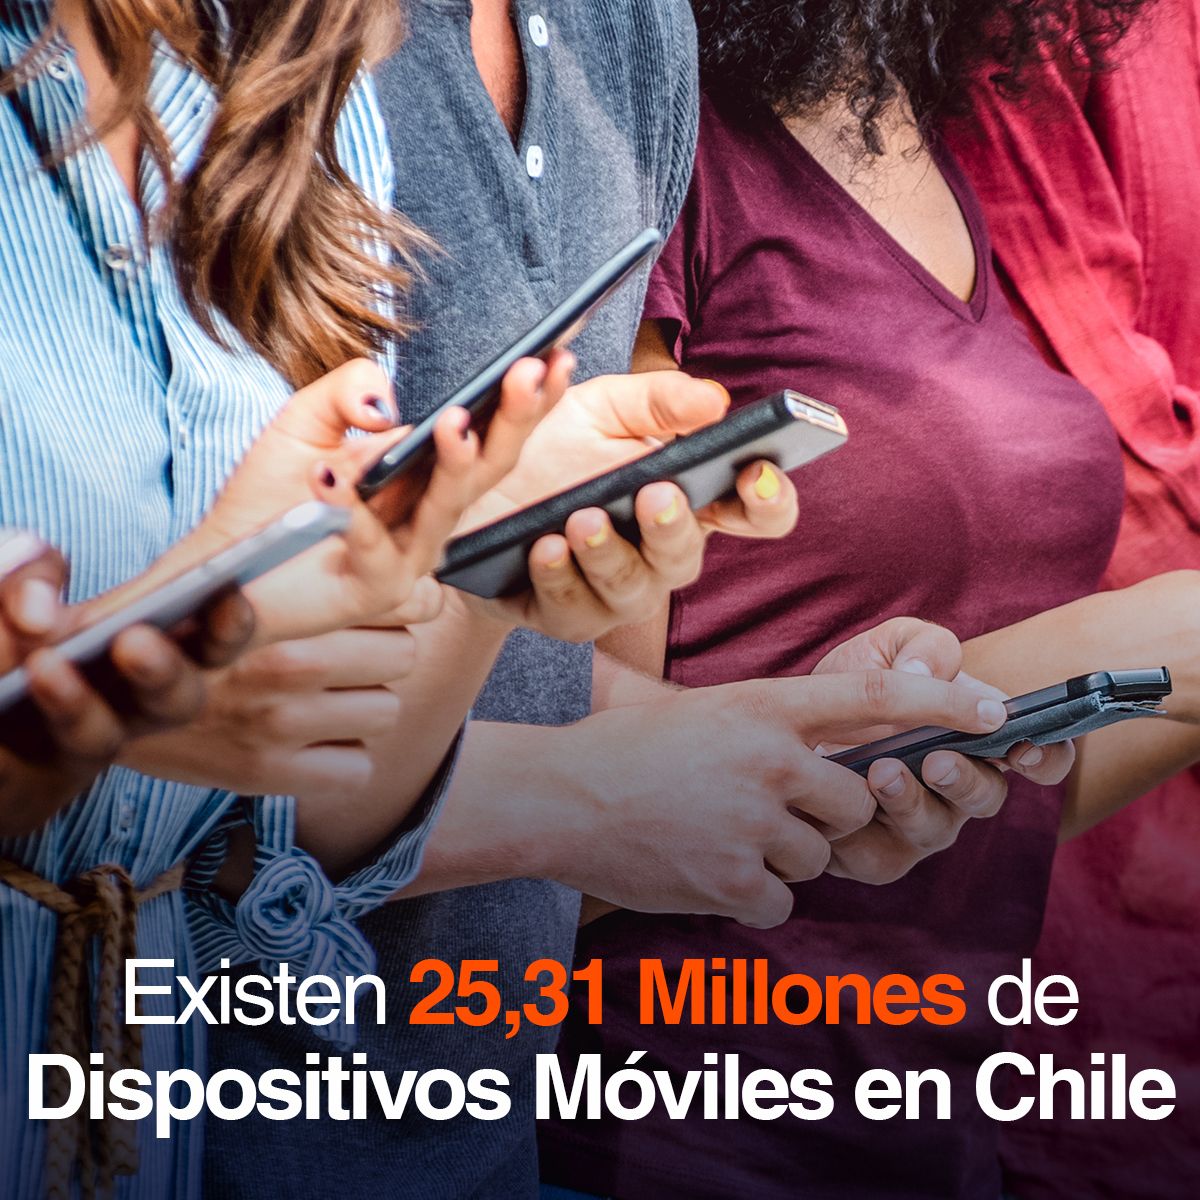 Existen 25,31 Millones de Dispositivos Móviles en Chile